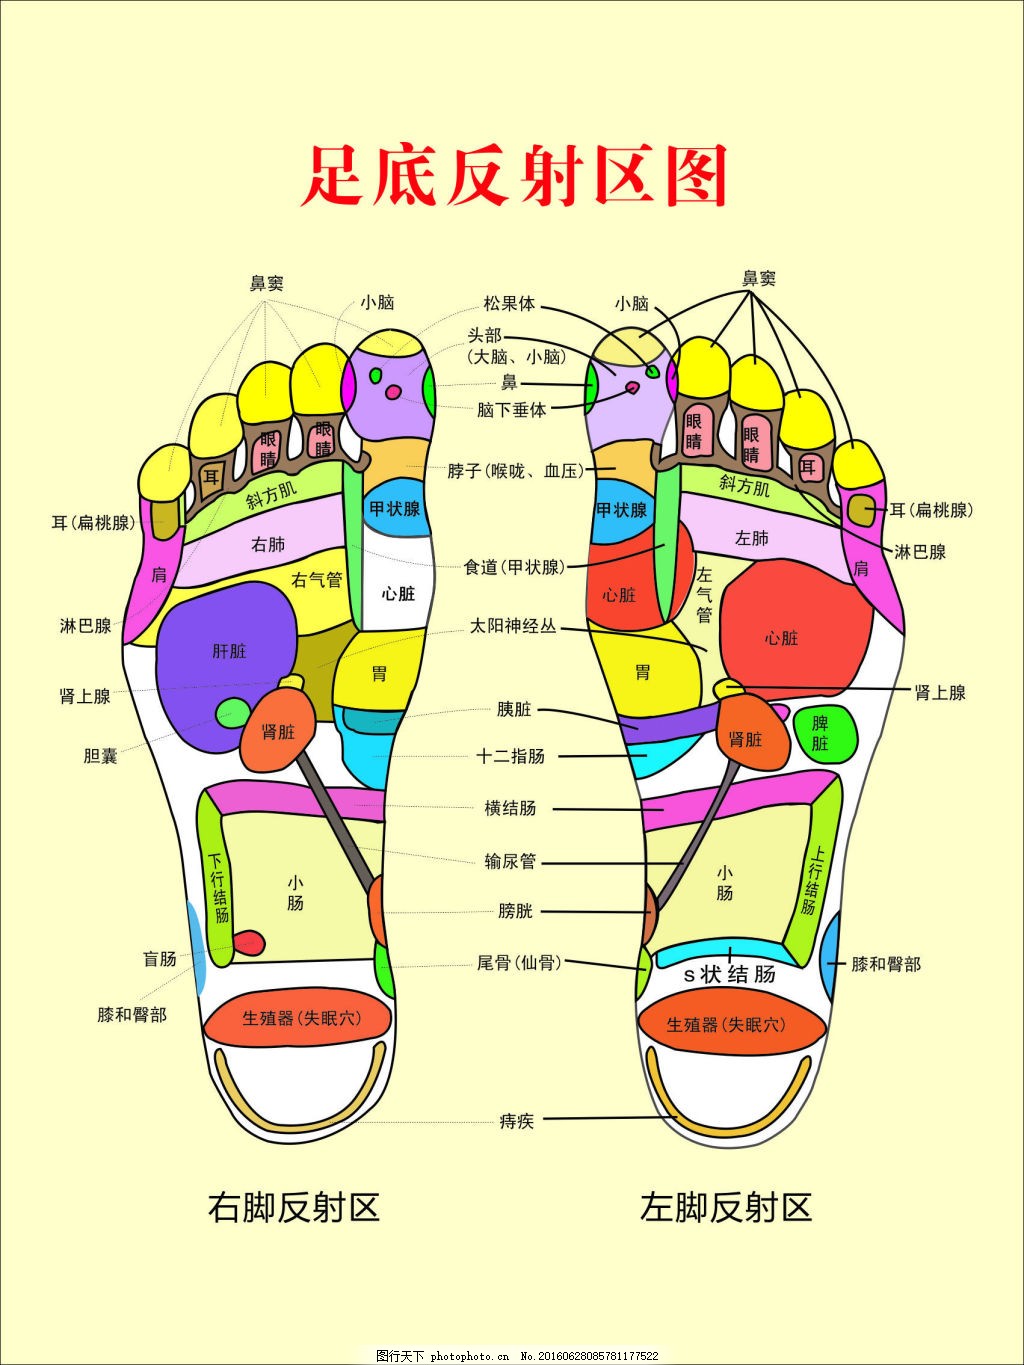 足解剖模型A11311 - 人体解剖-系统解剖学肌肉模型 - 上海佳悦科教设备发展有限公司